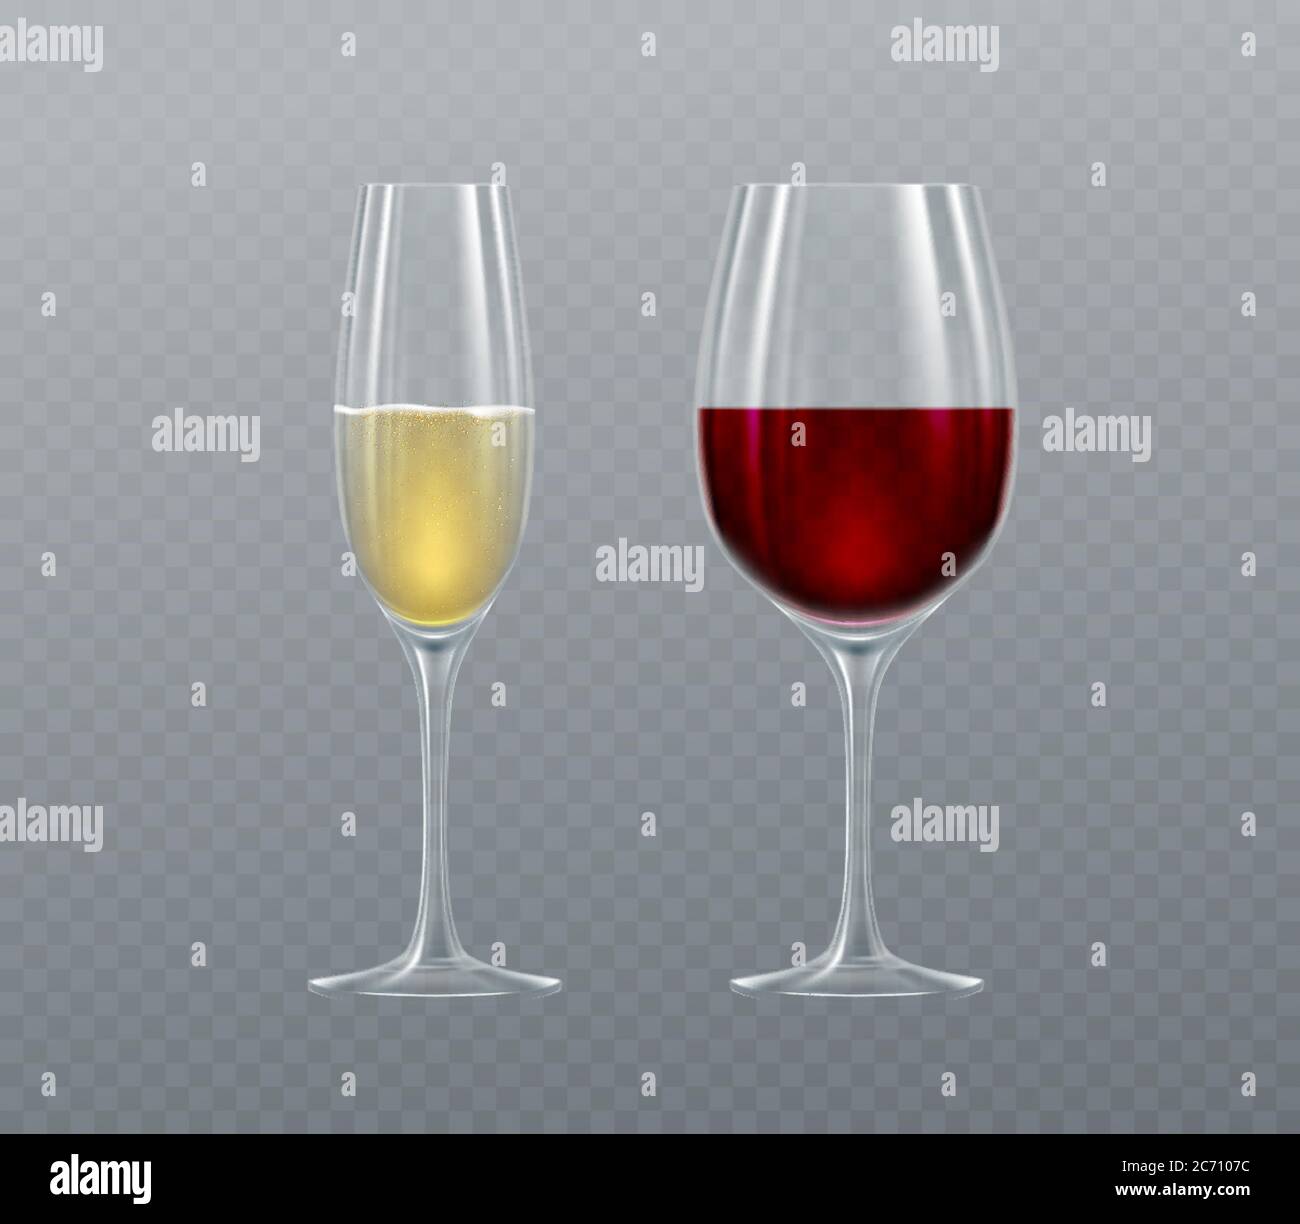 Realistische Gläser Champagner und Wein isoliert auf einem transparenten Hintergrund. Vektorgrafik Stock Vektor